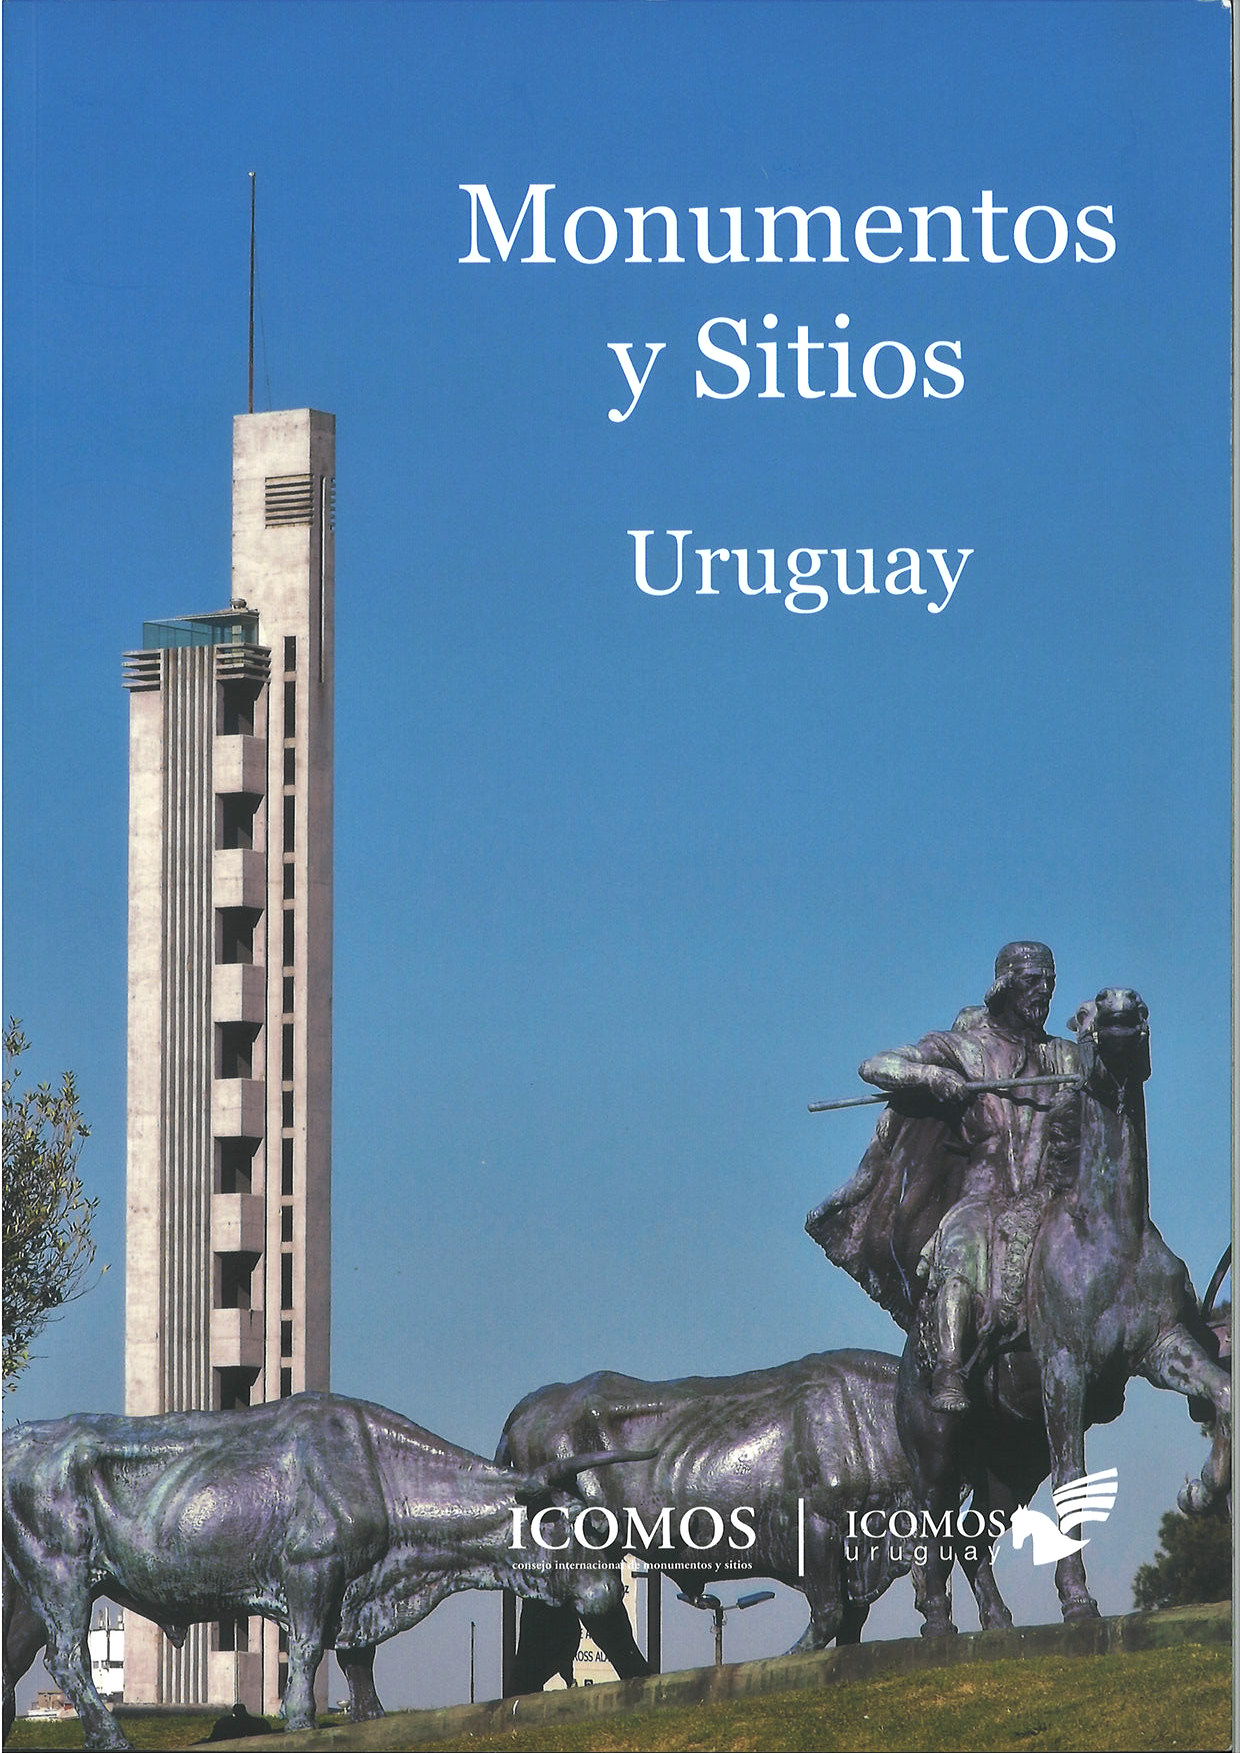 ICOMOS Uruguay Monumentos y sitios